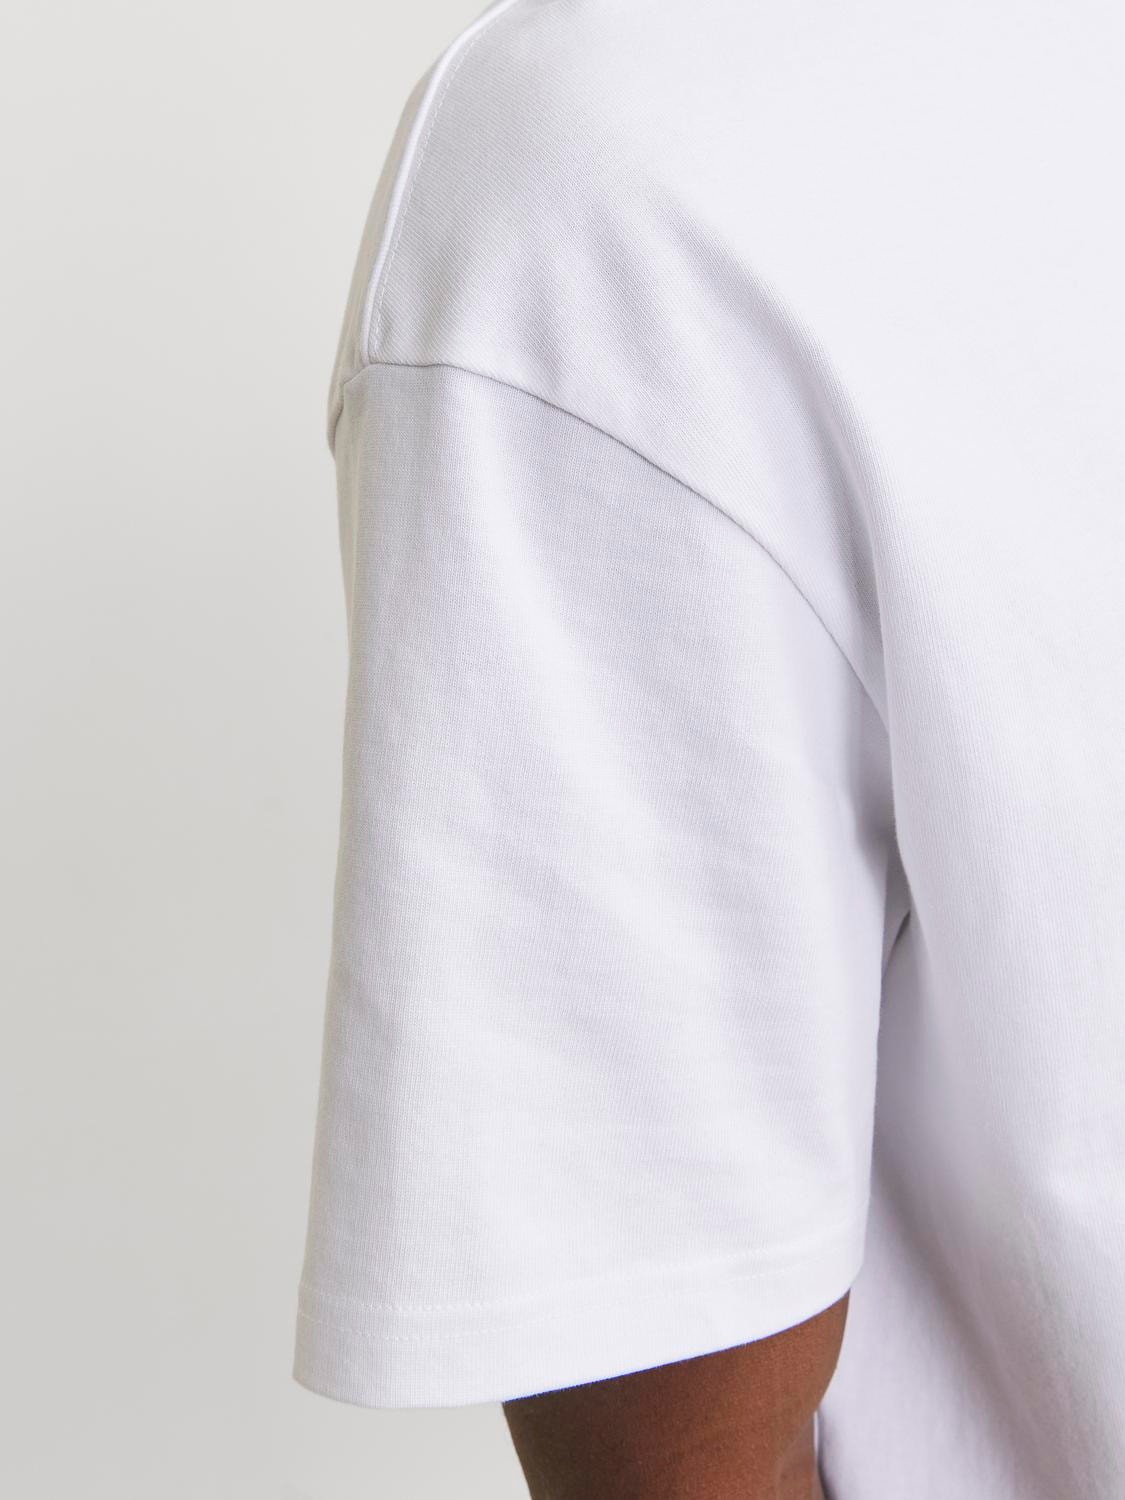 Jack & Jones Einfarbig Rundhals T-shirt -Bright White - 12227086